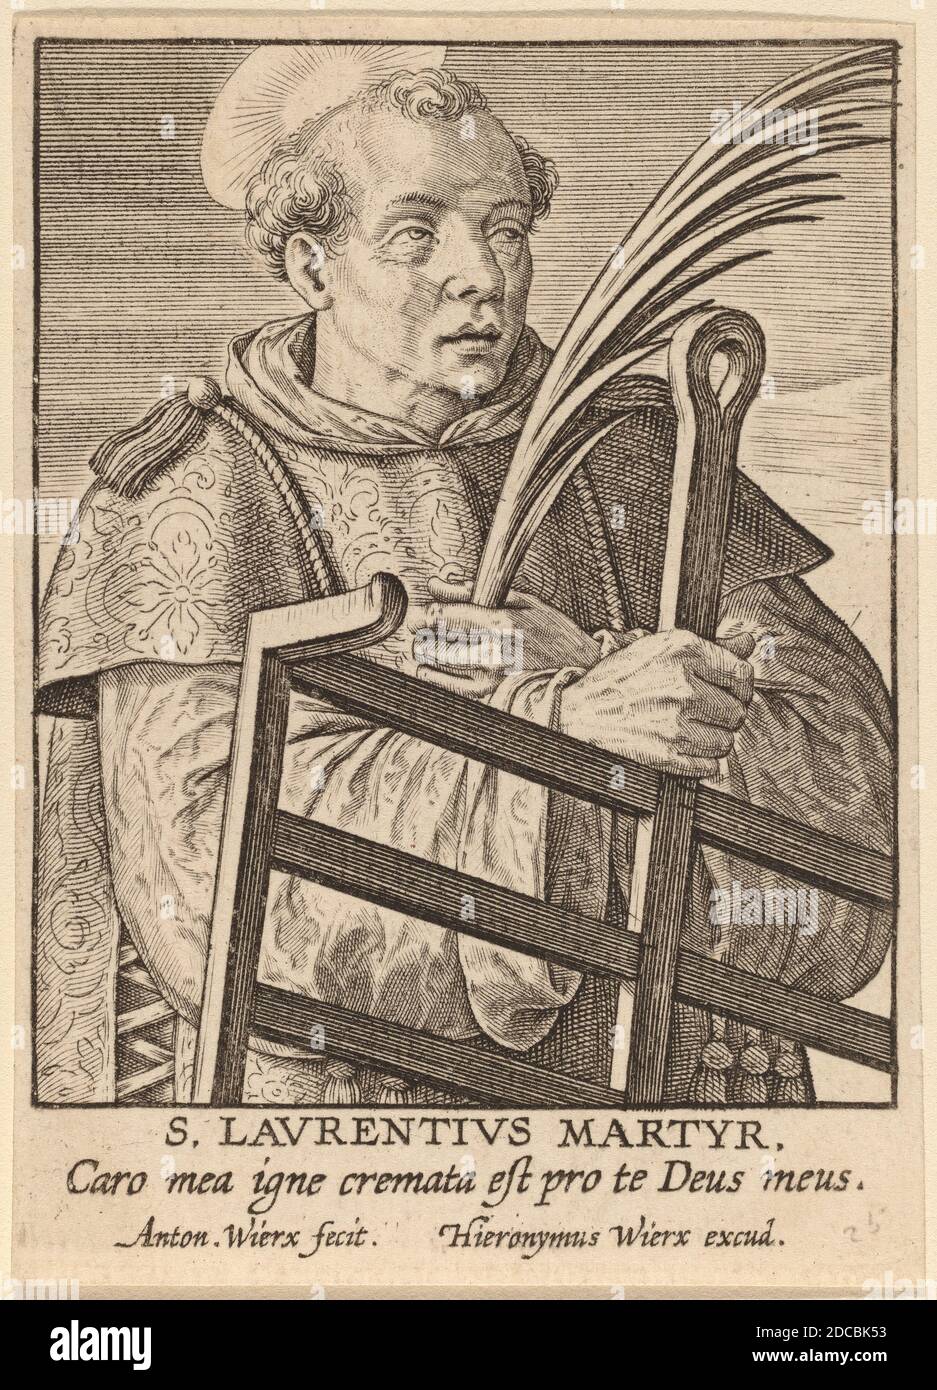 Anton Wierix II, (artista), flamenco, c. 1555/1559 - 1604, S. Laurentius Martyr, grabado Foto de stock